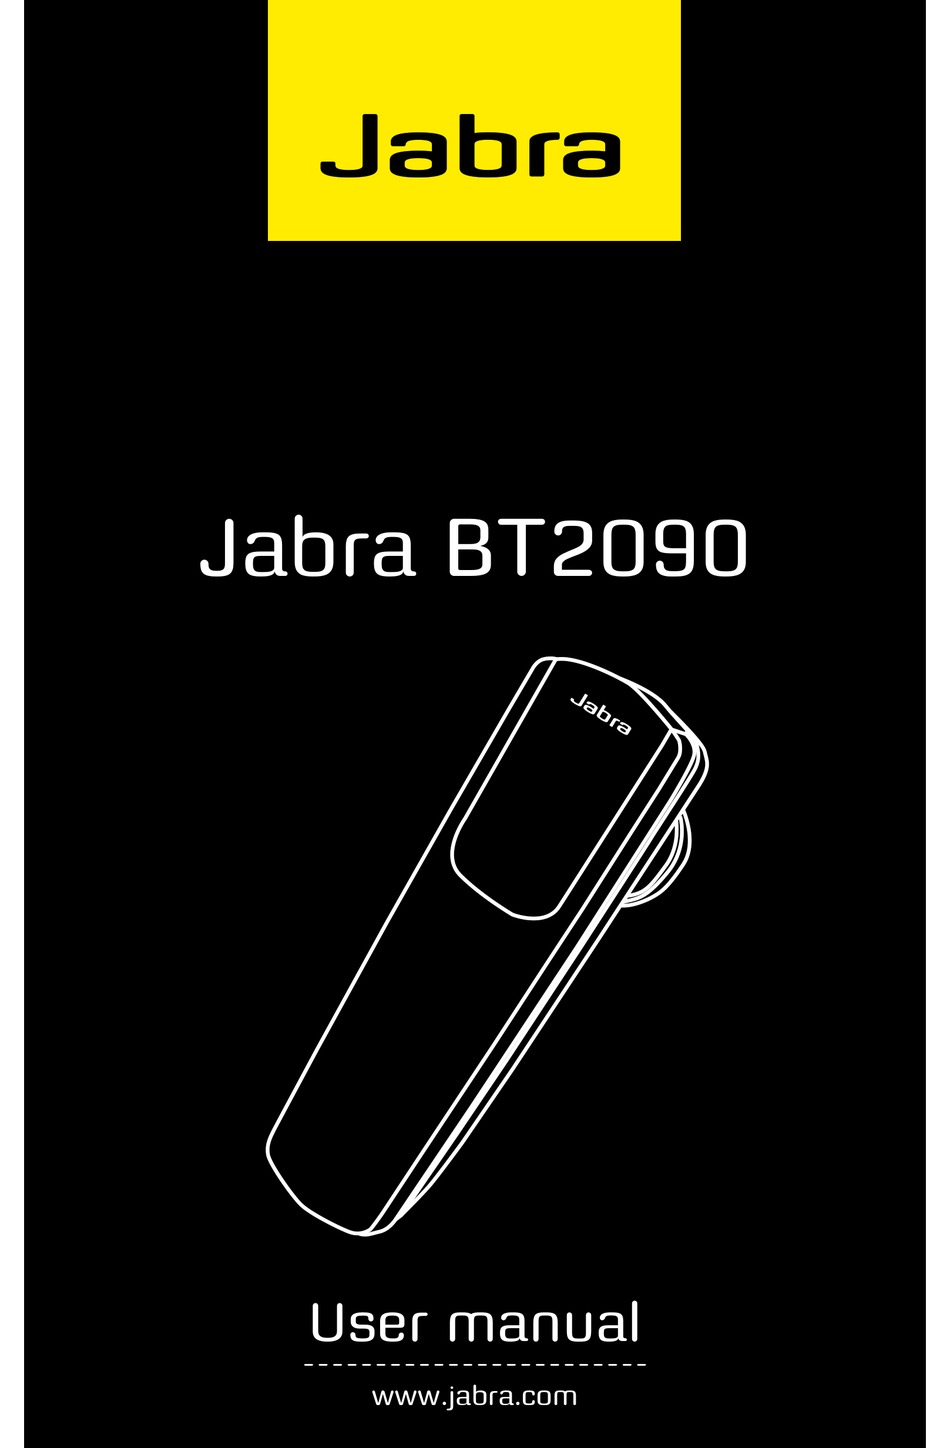 Portiek Zuidelijk Onbekwaamheid JABRA BT2090 USER MANUAL Pdf Download | ManualsLib